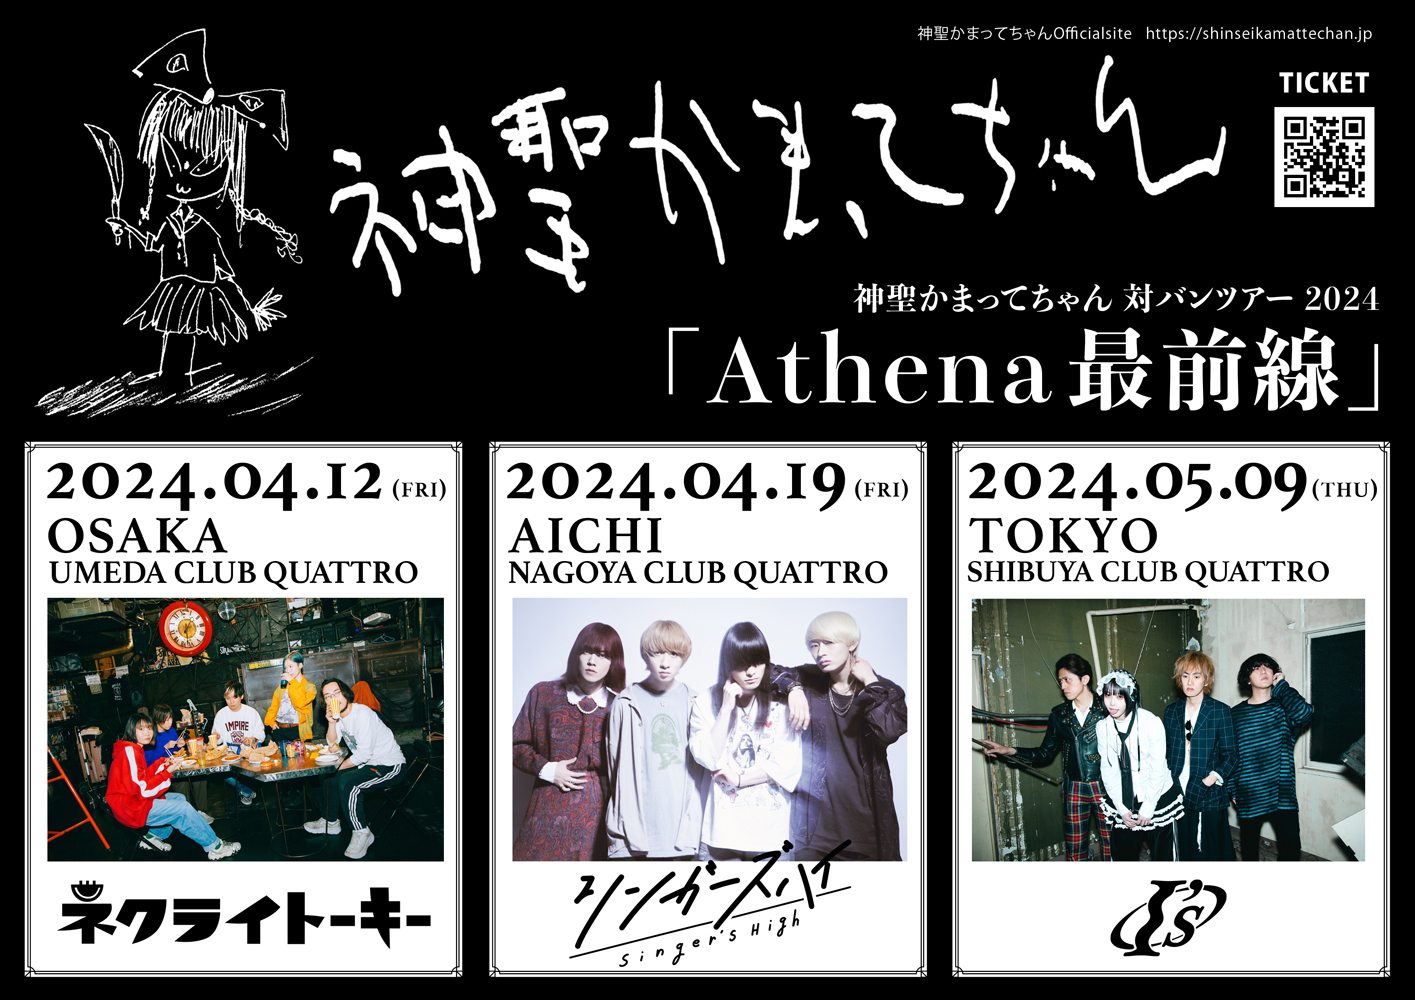 春の東名阪対バンツアー 「Athena最前線」開催。ツアーゲストにネクライトーキー、シンガーズハイ、I'sの出演決定